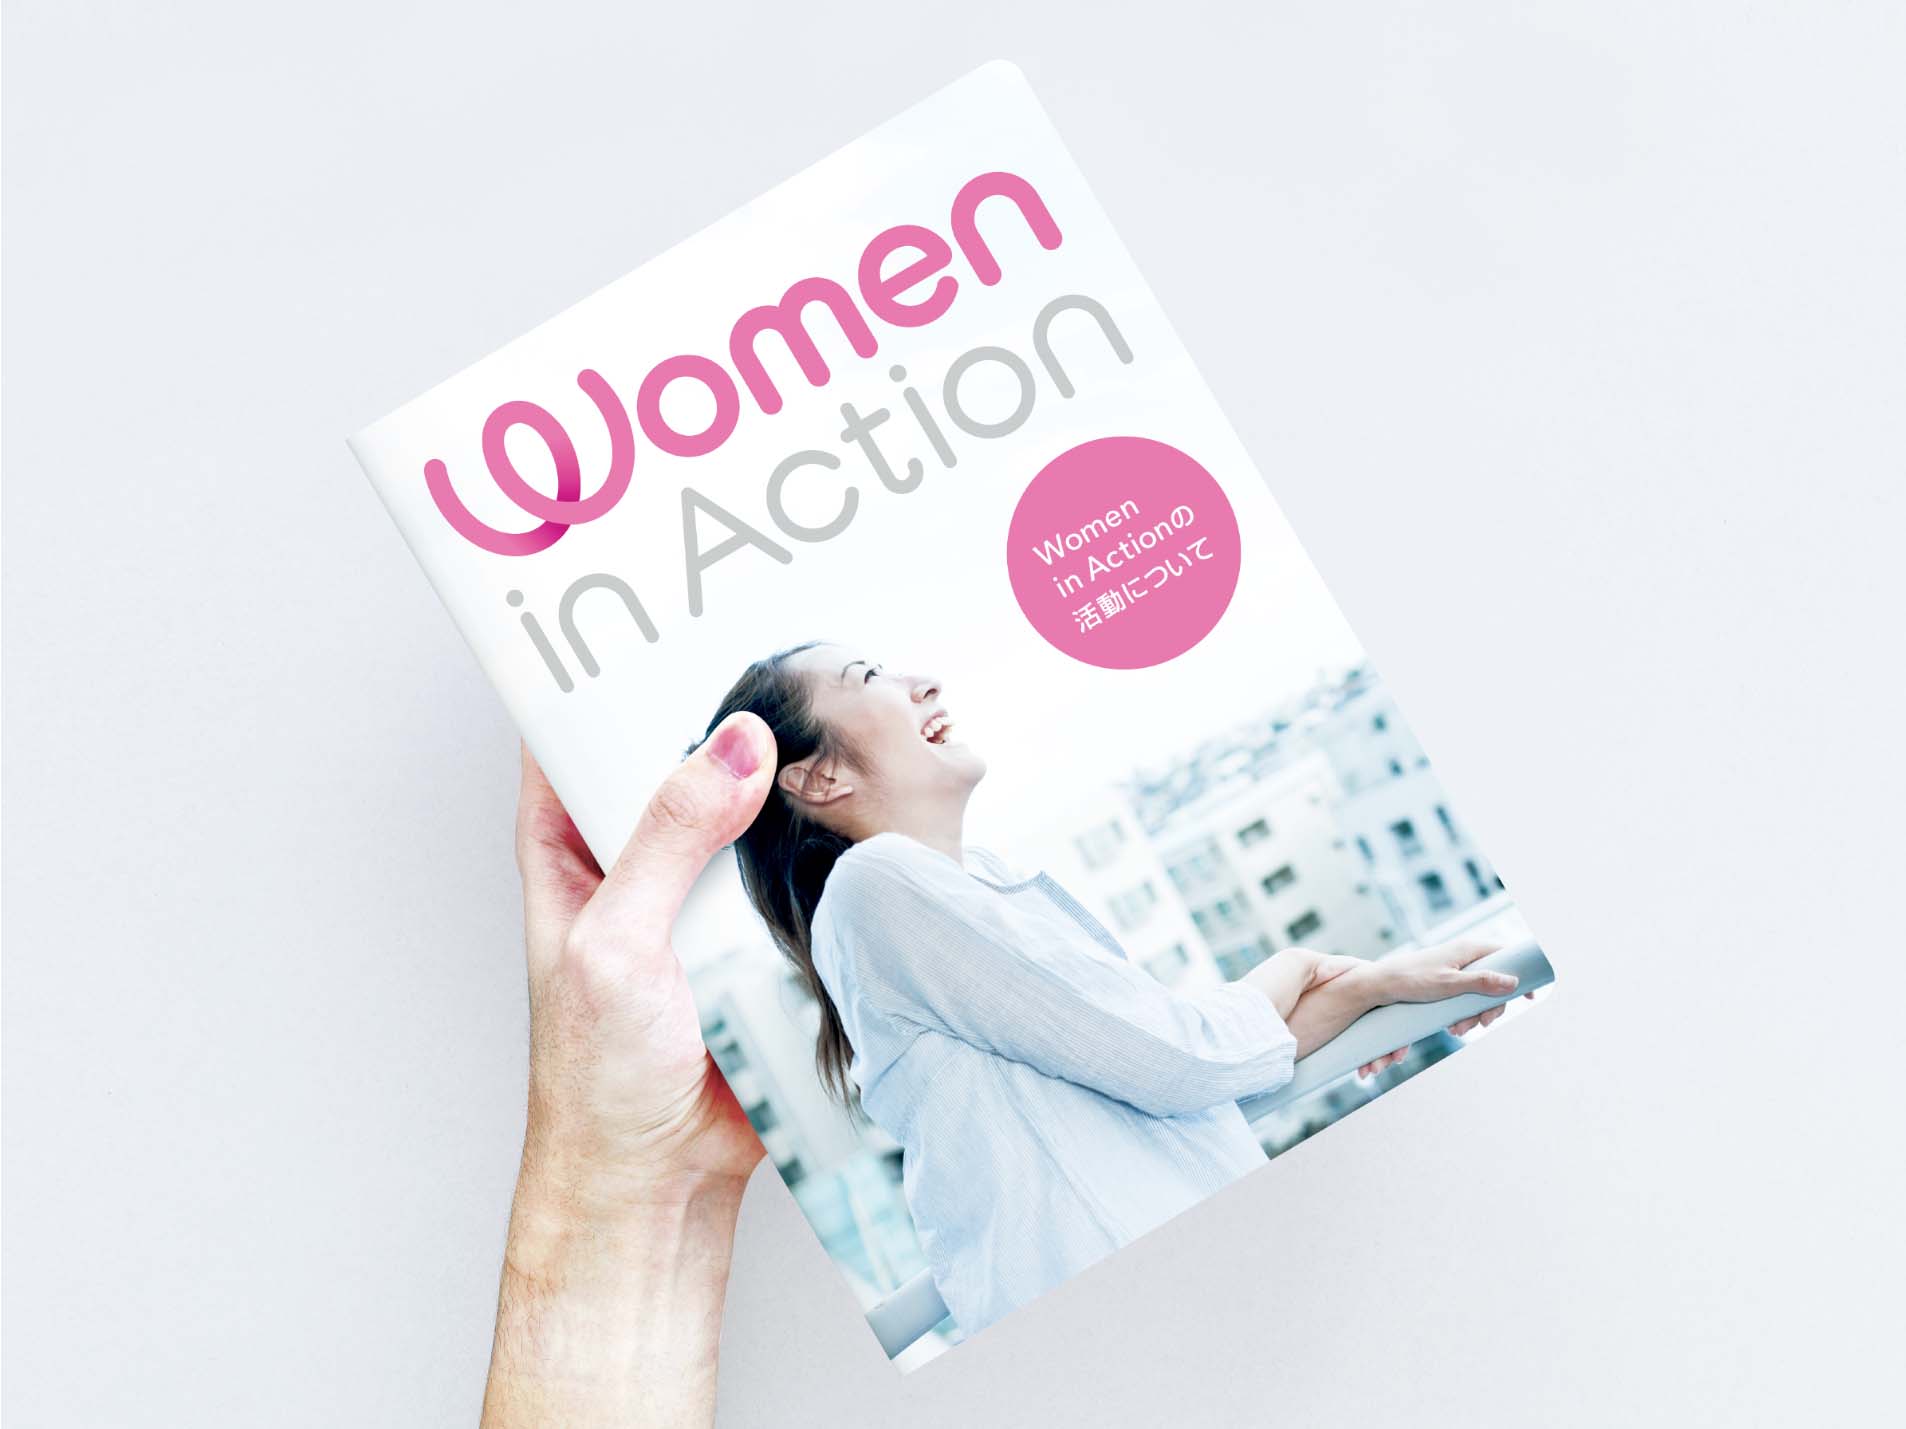 women in action branding